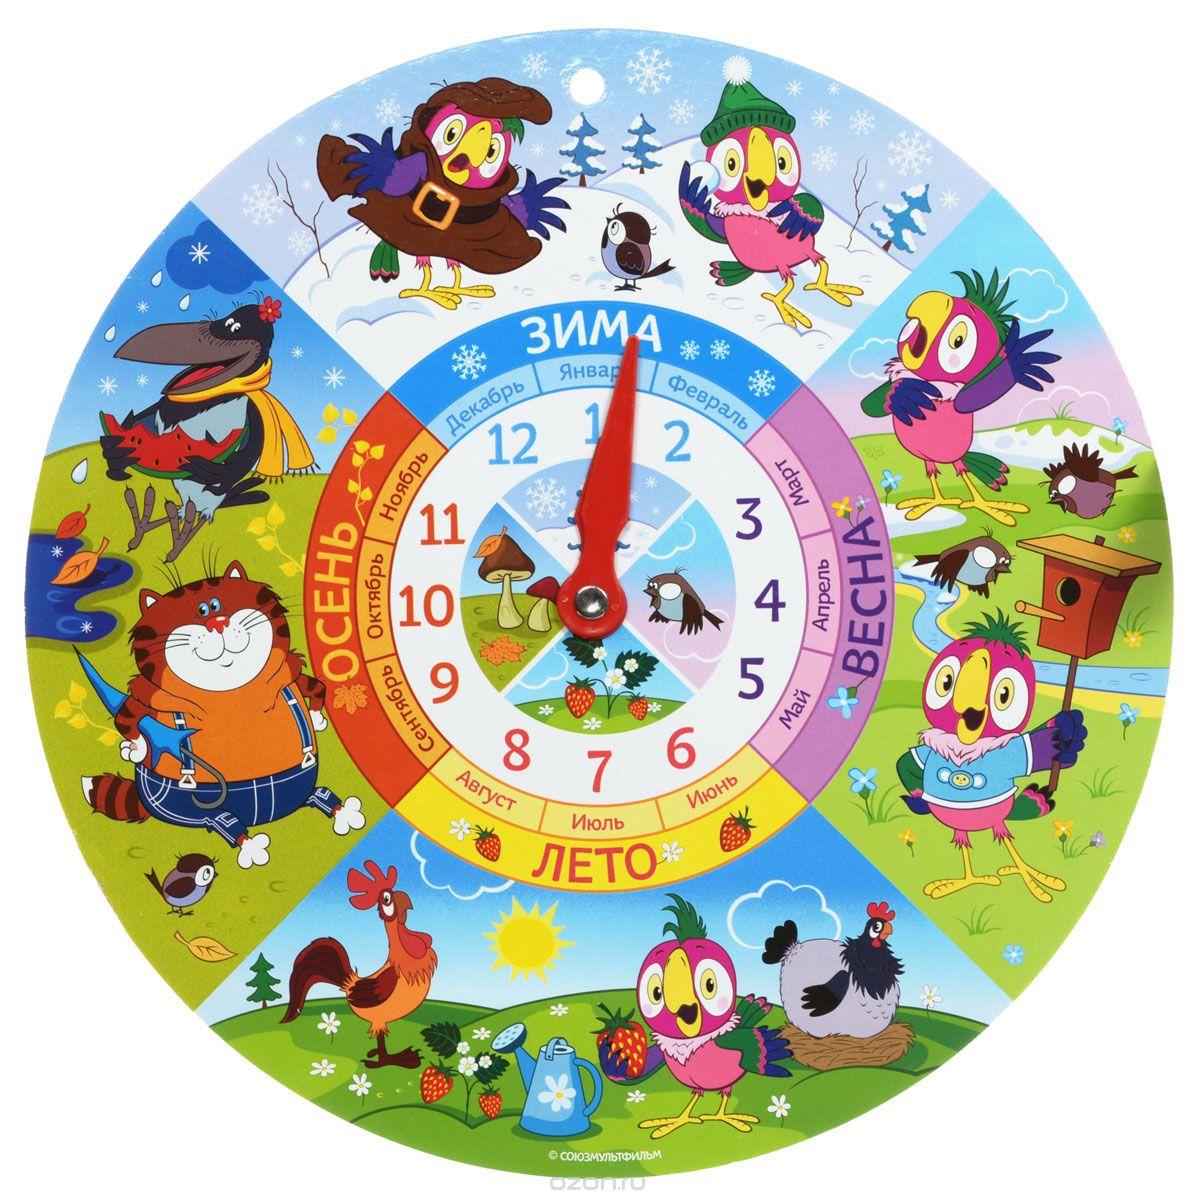 Χρησιμοποιώντας χαρτόνι και χρώμα, μπορείτε να φτιάξετε ένα ρολόι μάθησης για τα παιδιά.